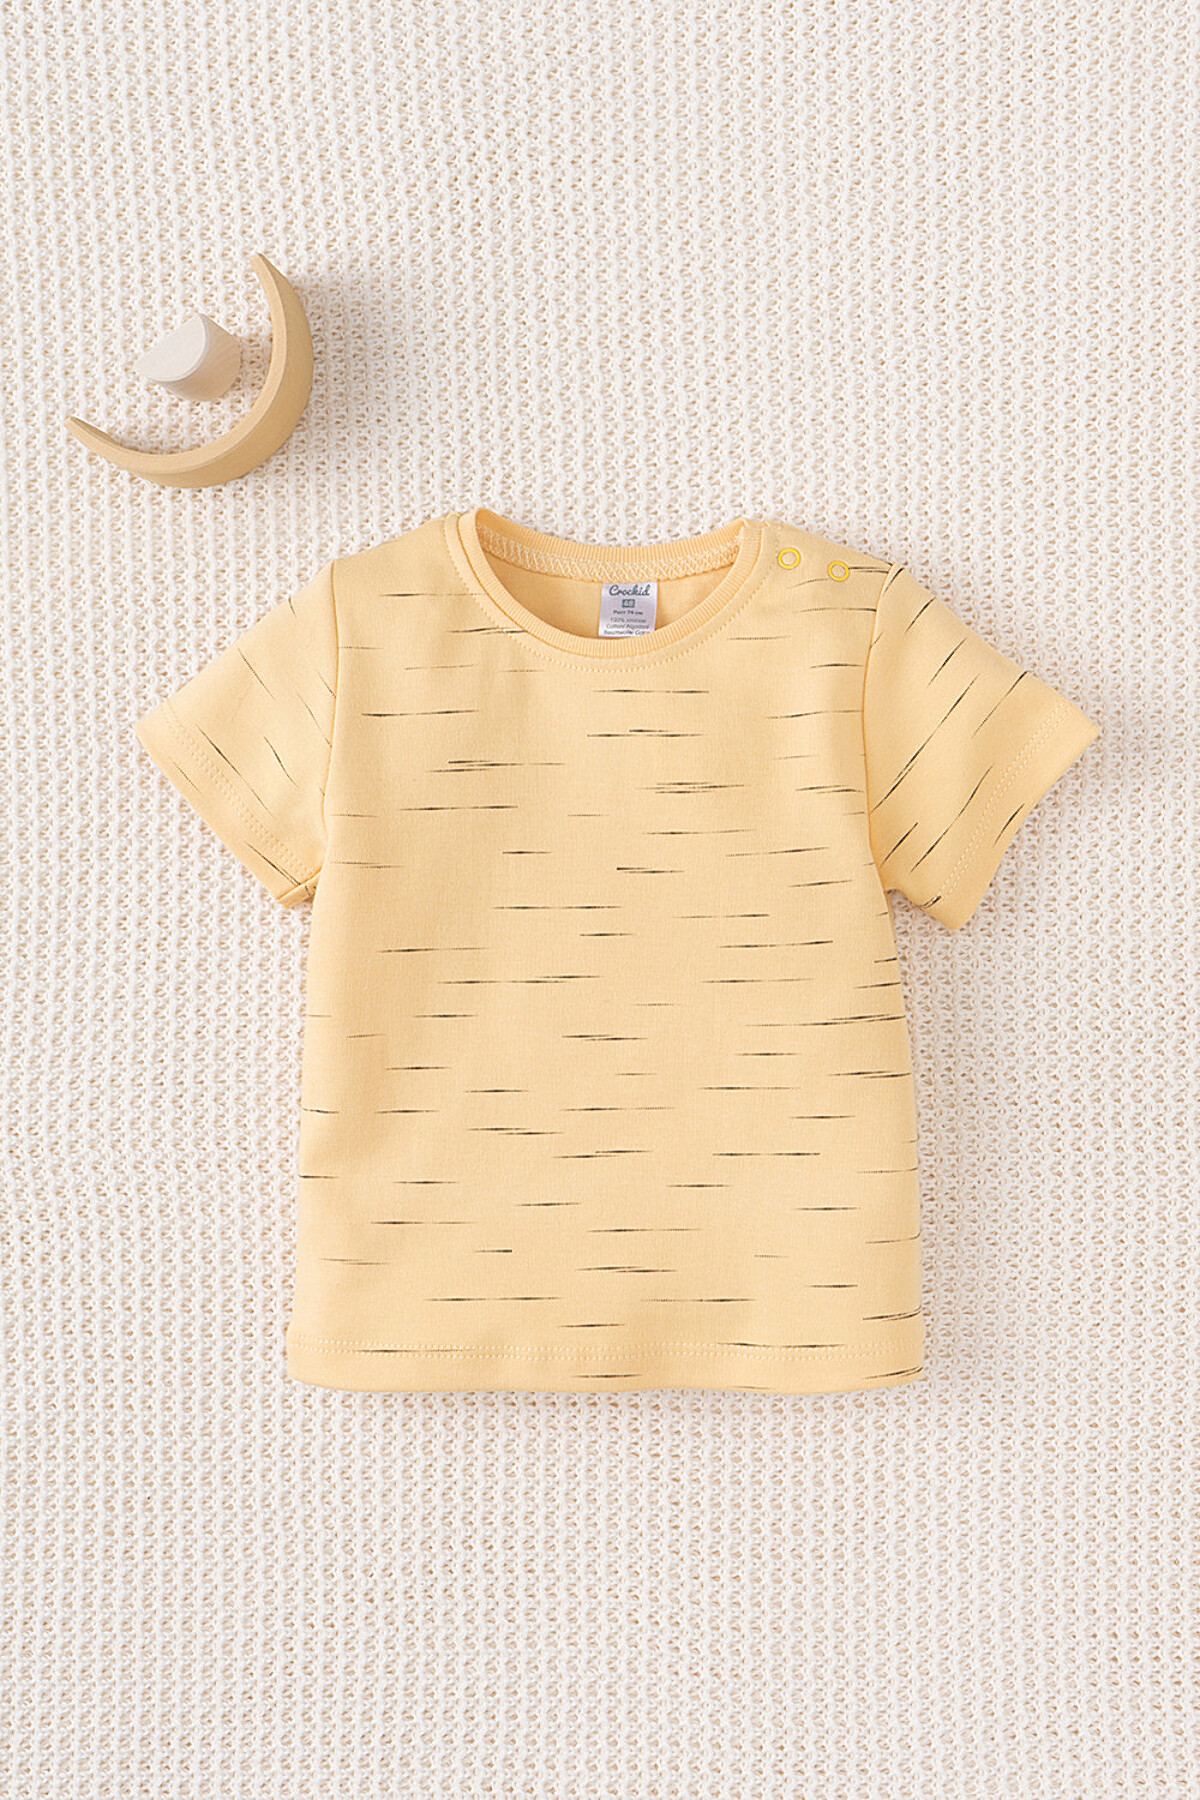 Симпатичная футболка для мальчика К 301156/эффект меланжа на светло-желтом фуфайка Crockid